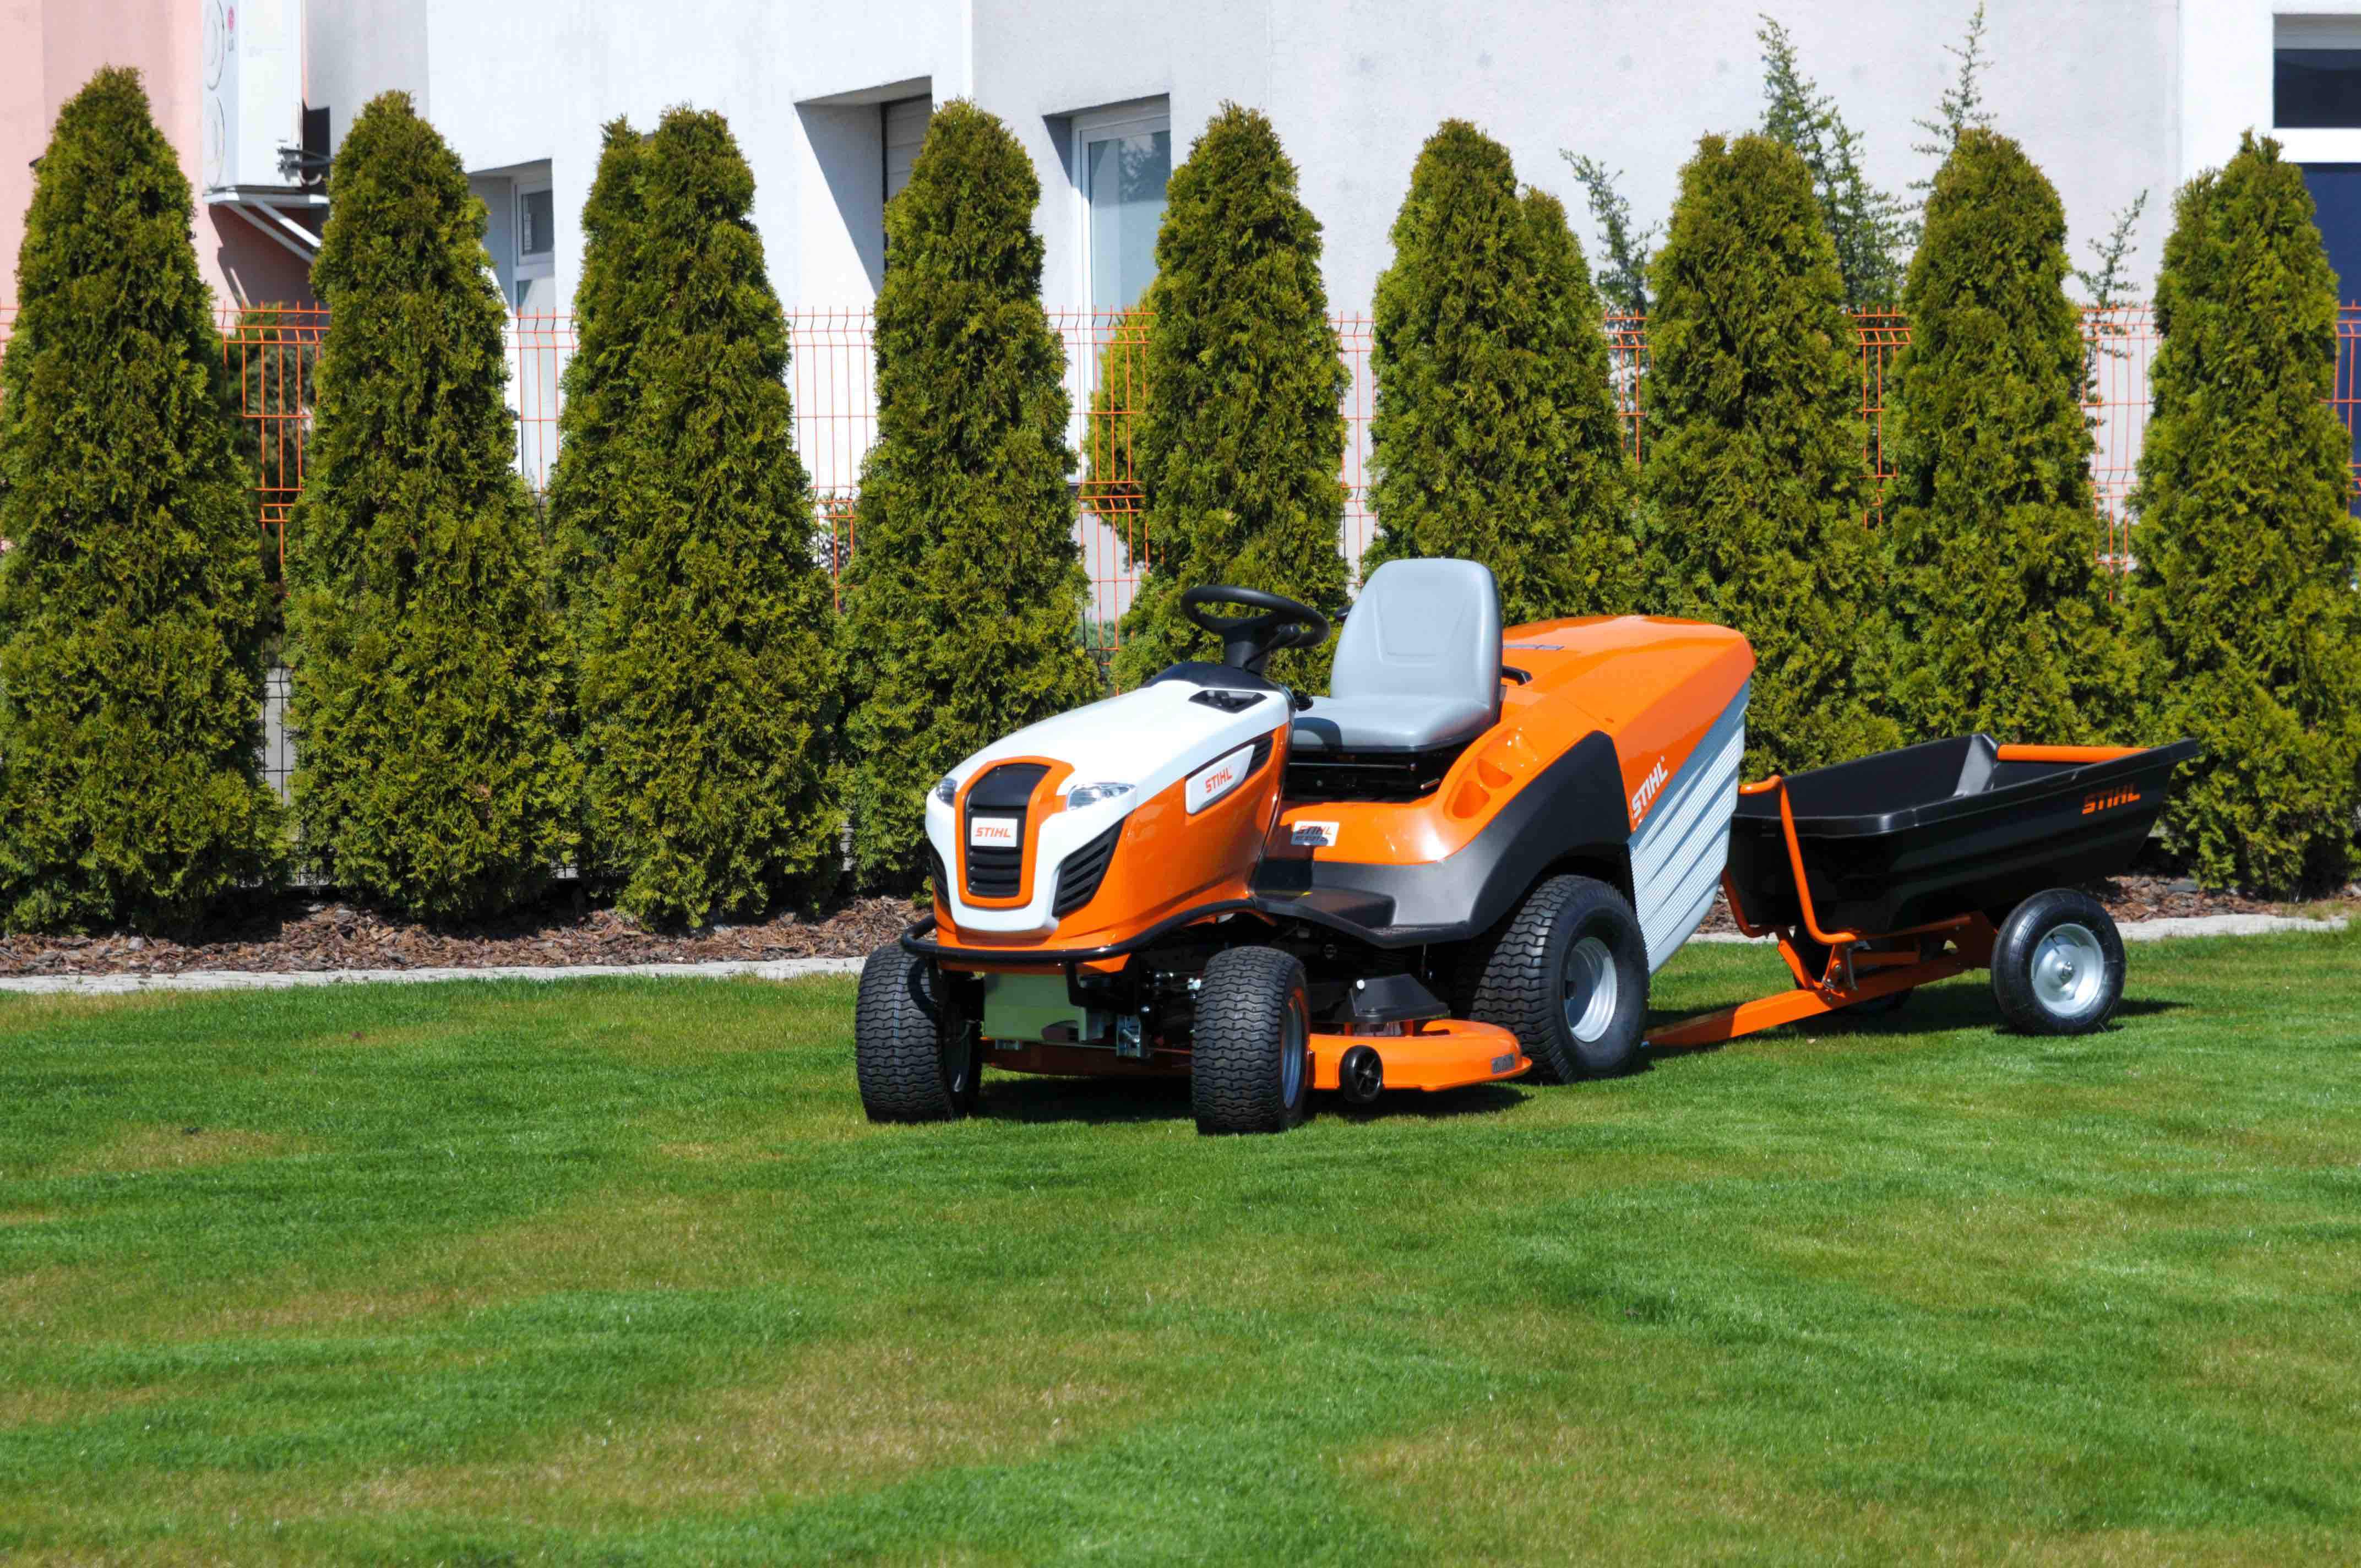 W konkursie Izydory 2019 do wygrania jest traktor ogrodniczy z przyczepką marki Stihl 